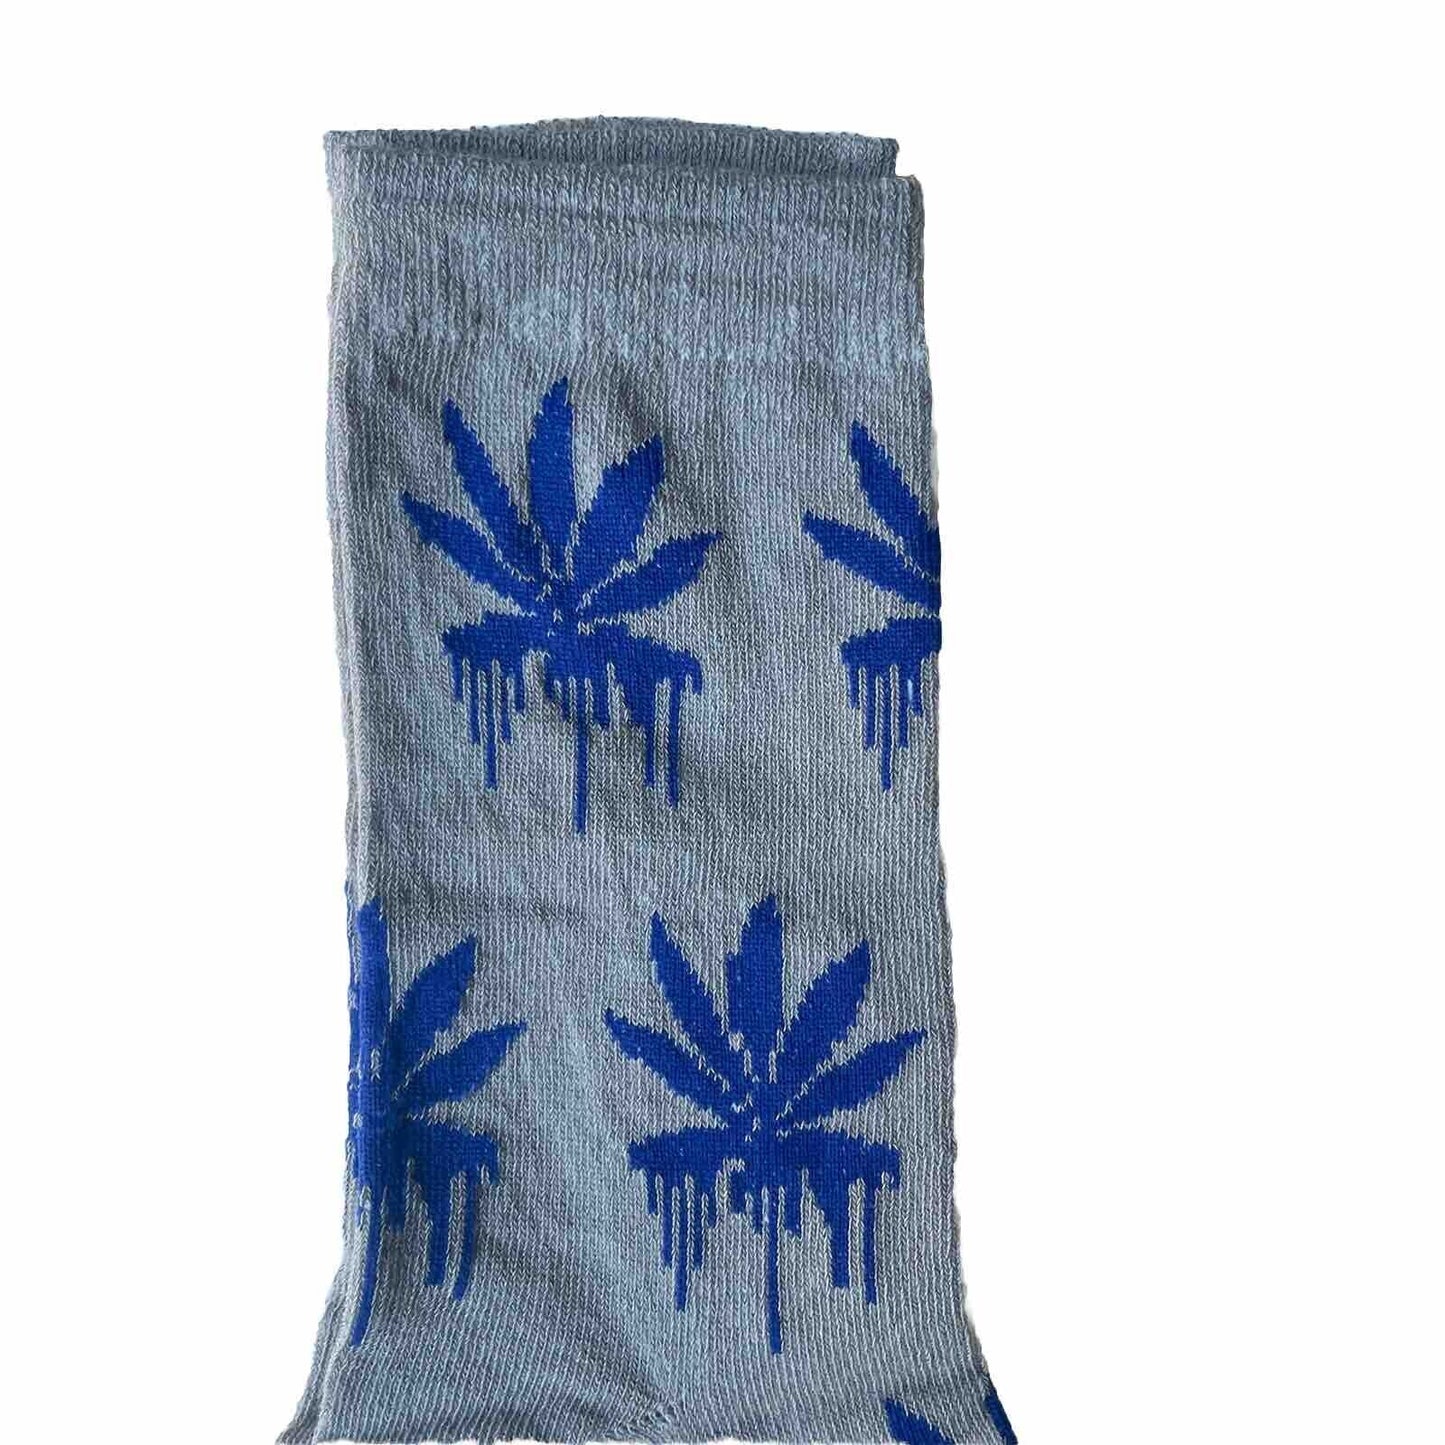 Novelty Socks Weed Blue Melting Leaf Size US 4½ - 9½ One Dozen